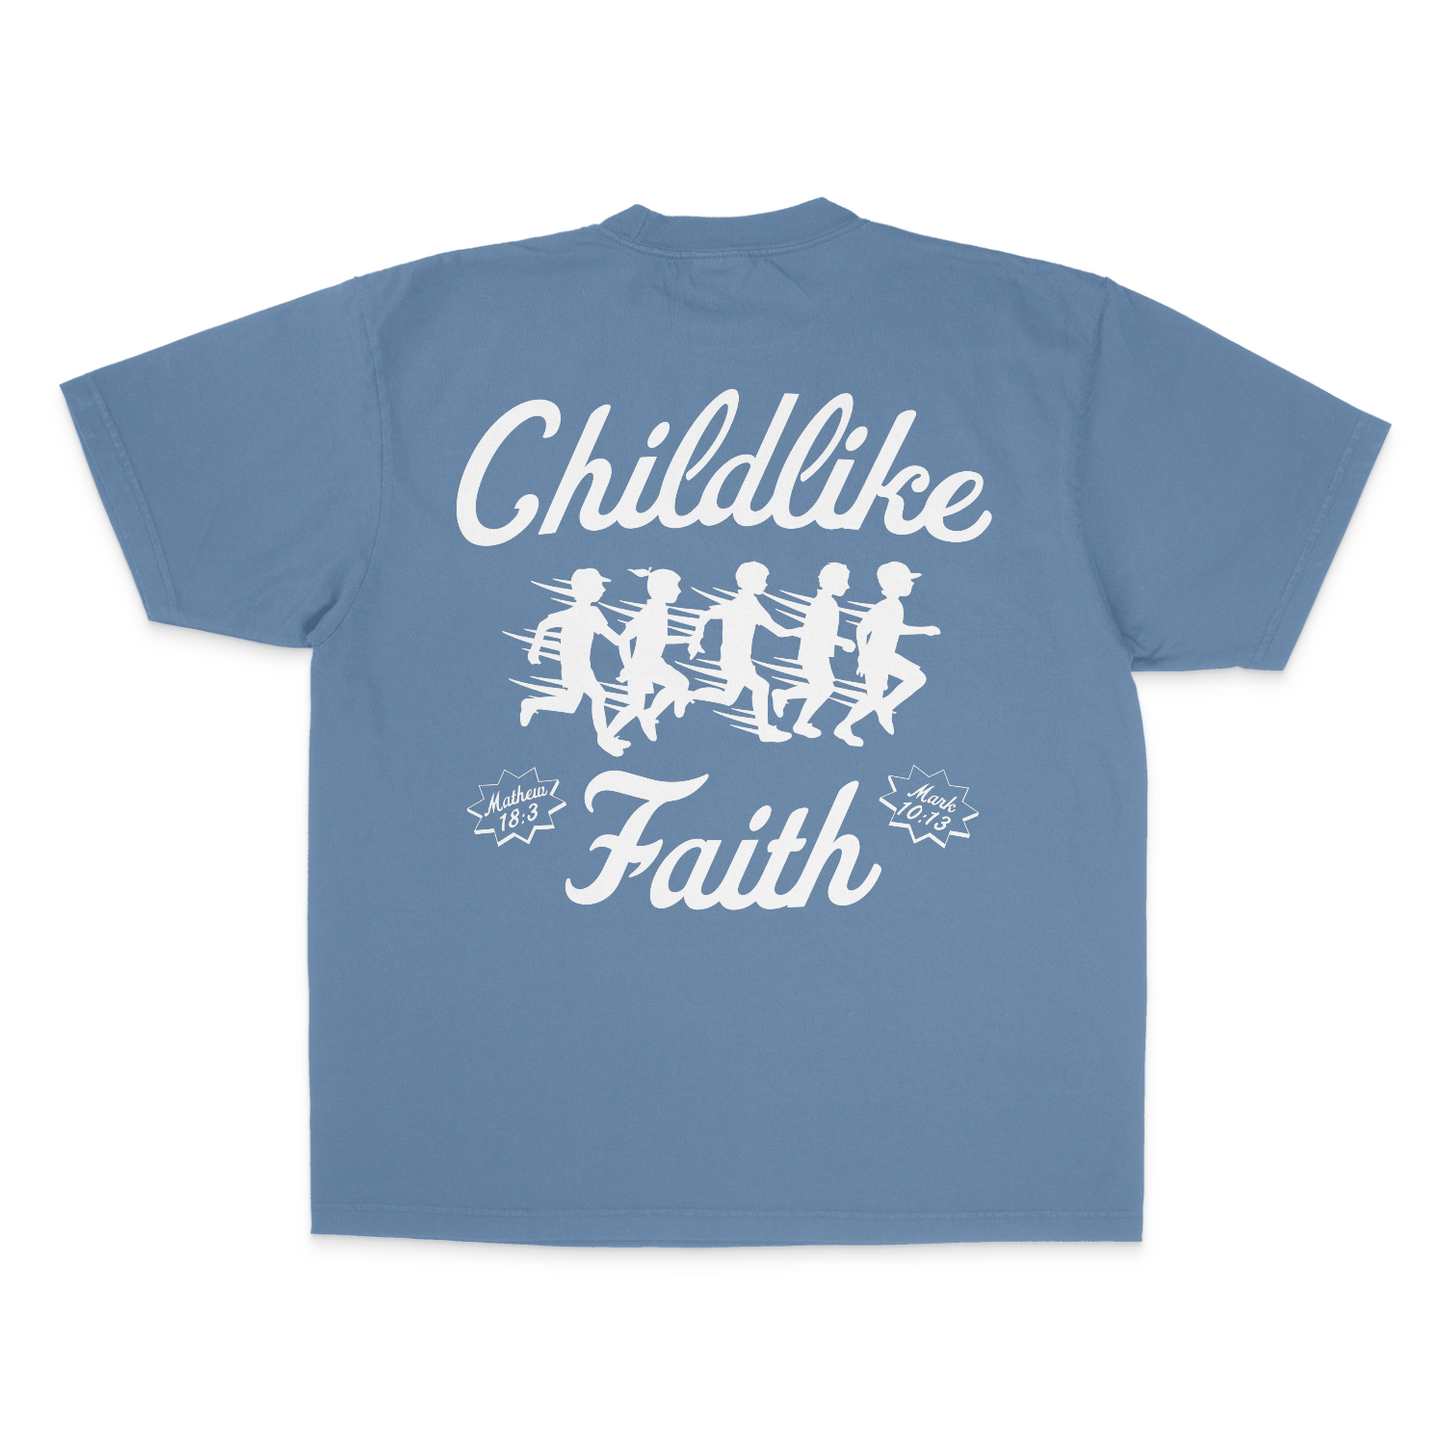 'Childlike Faith' T-Shirt